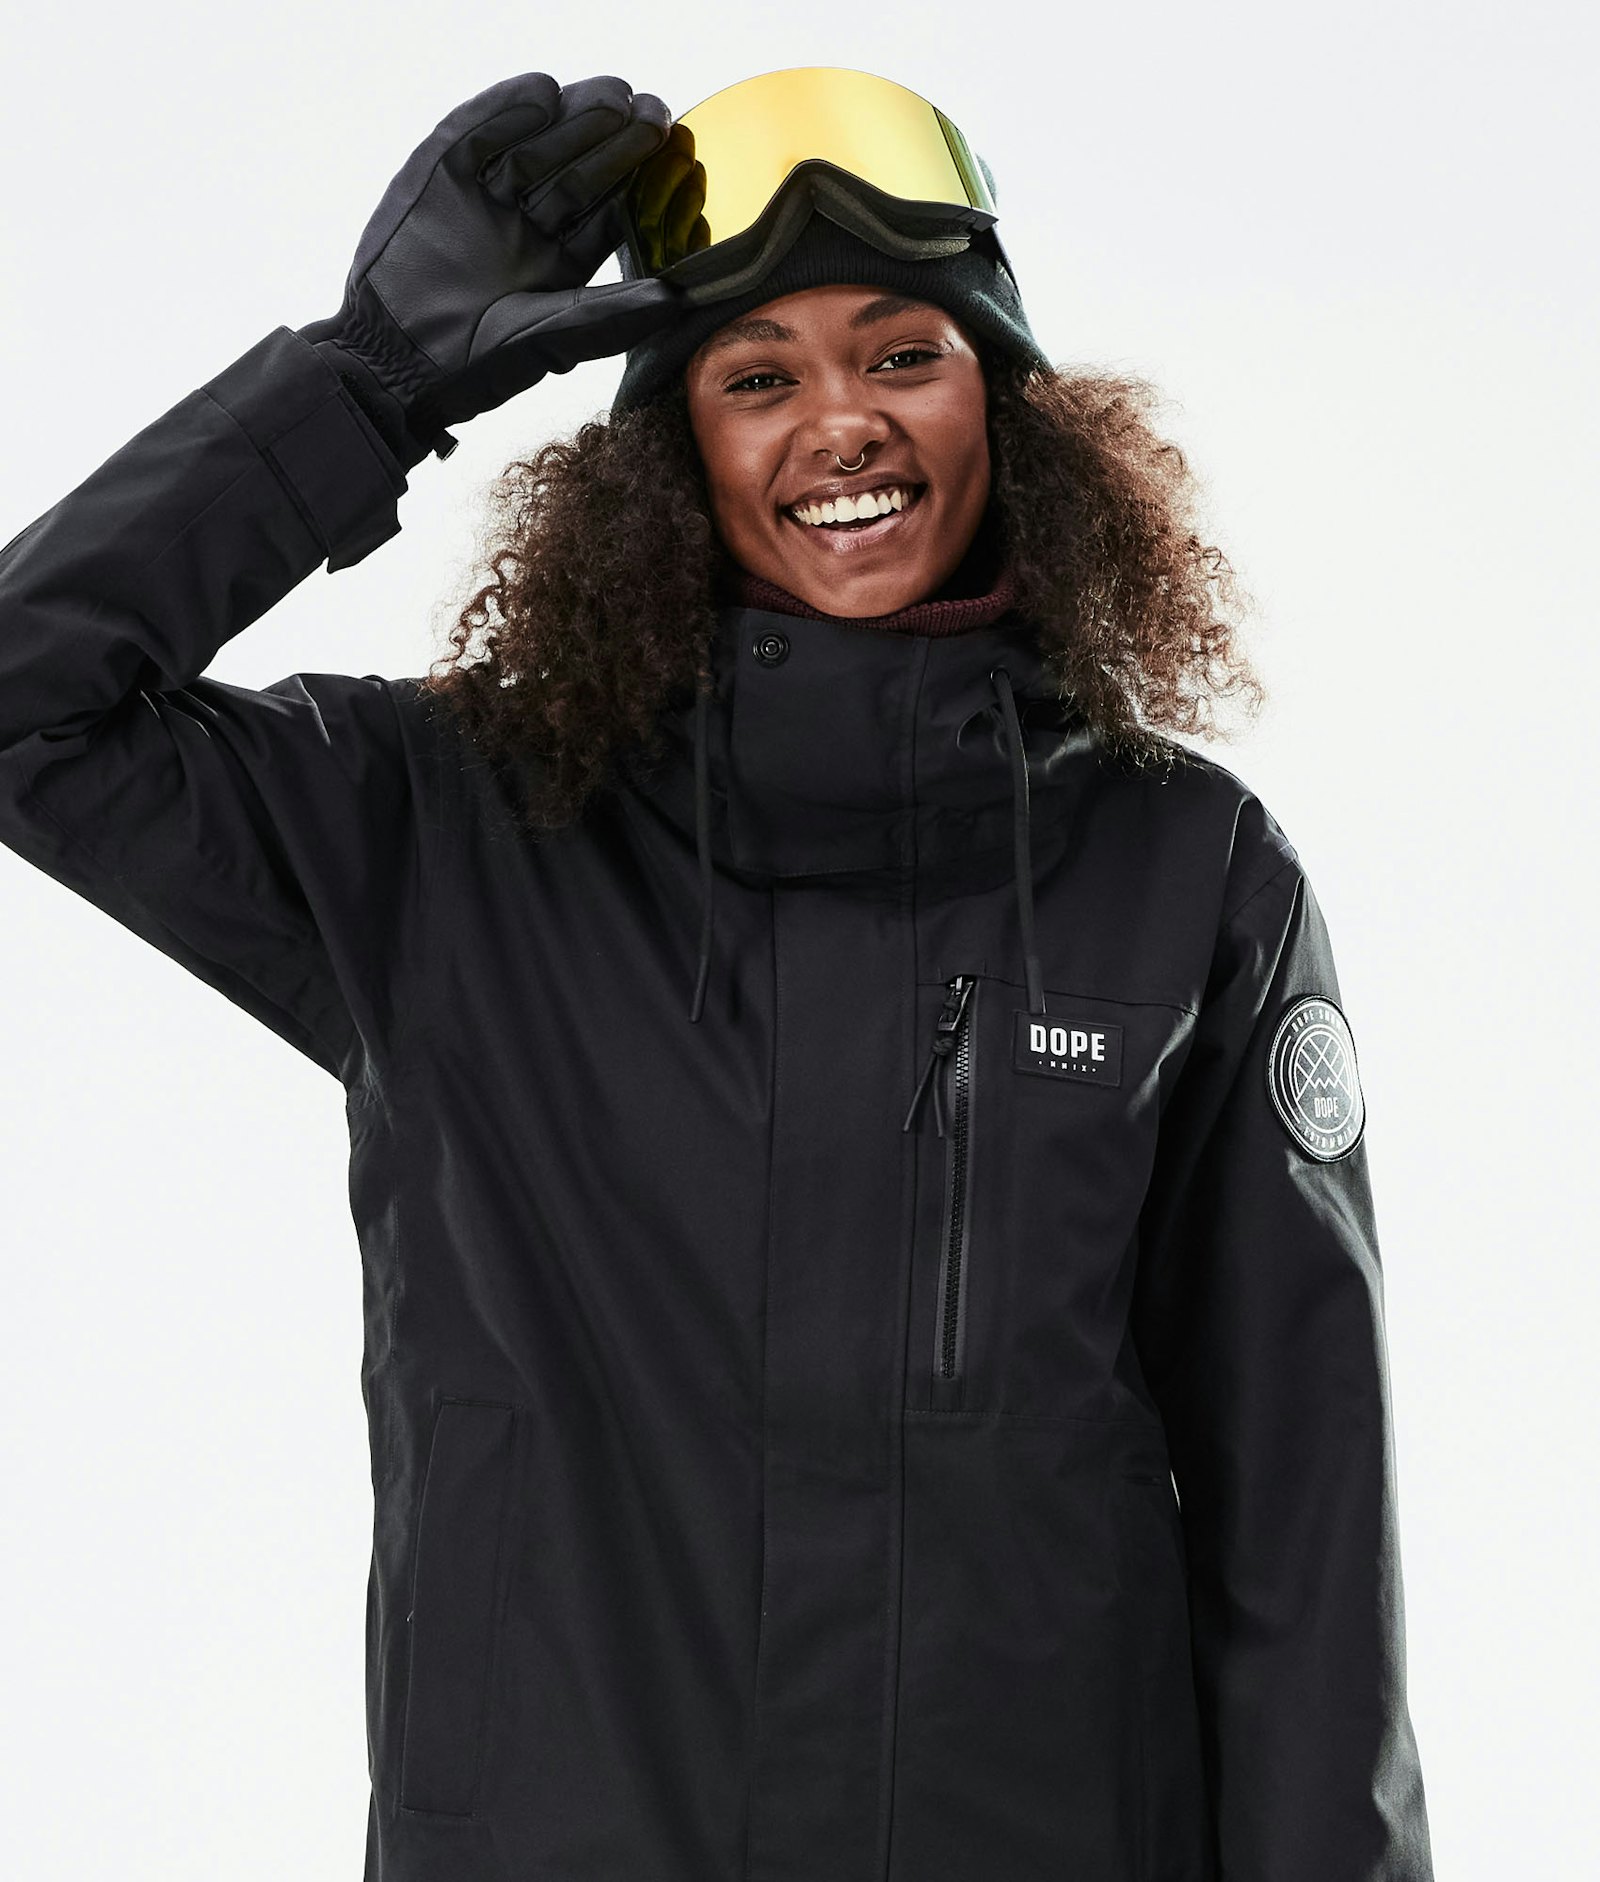 Dope Blizzard W Full Zip 2021 Snowboard Jacket Women Black Renewed